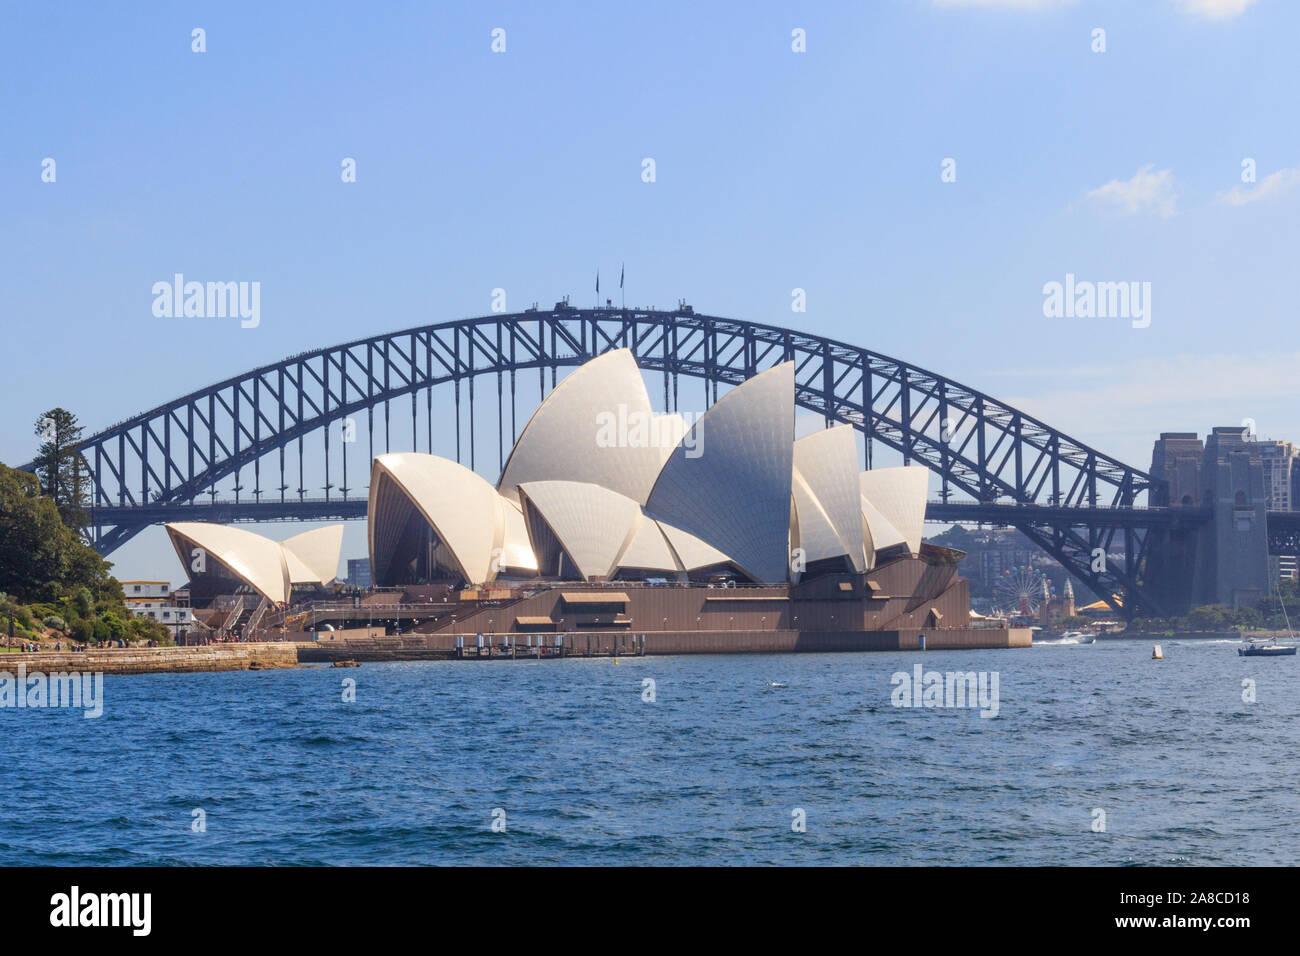 Sydney, Australien - 24. März 2013: Blick auf das Opernhaus in Sydney. Die Sydney Harbour Bridge im Hintergrund. Stockfoto